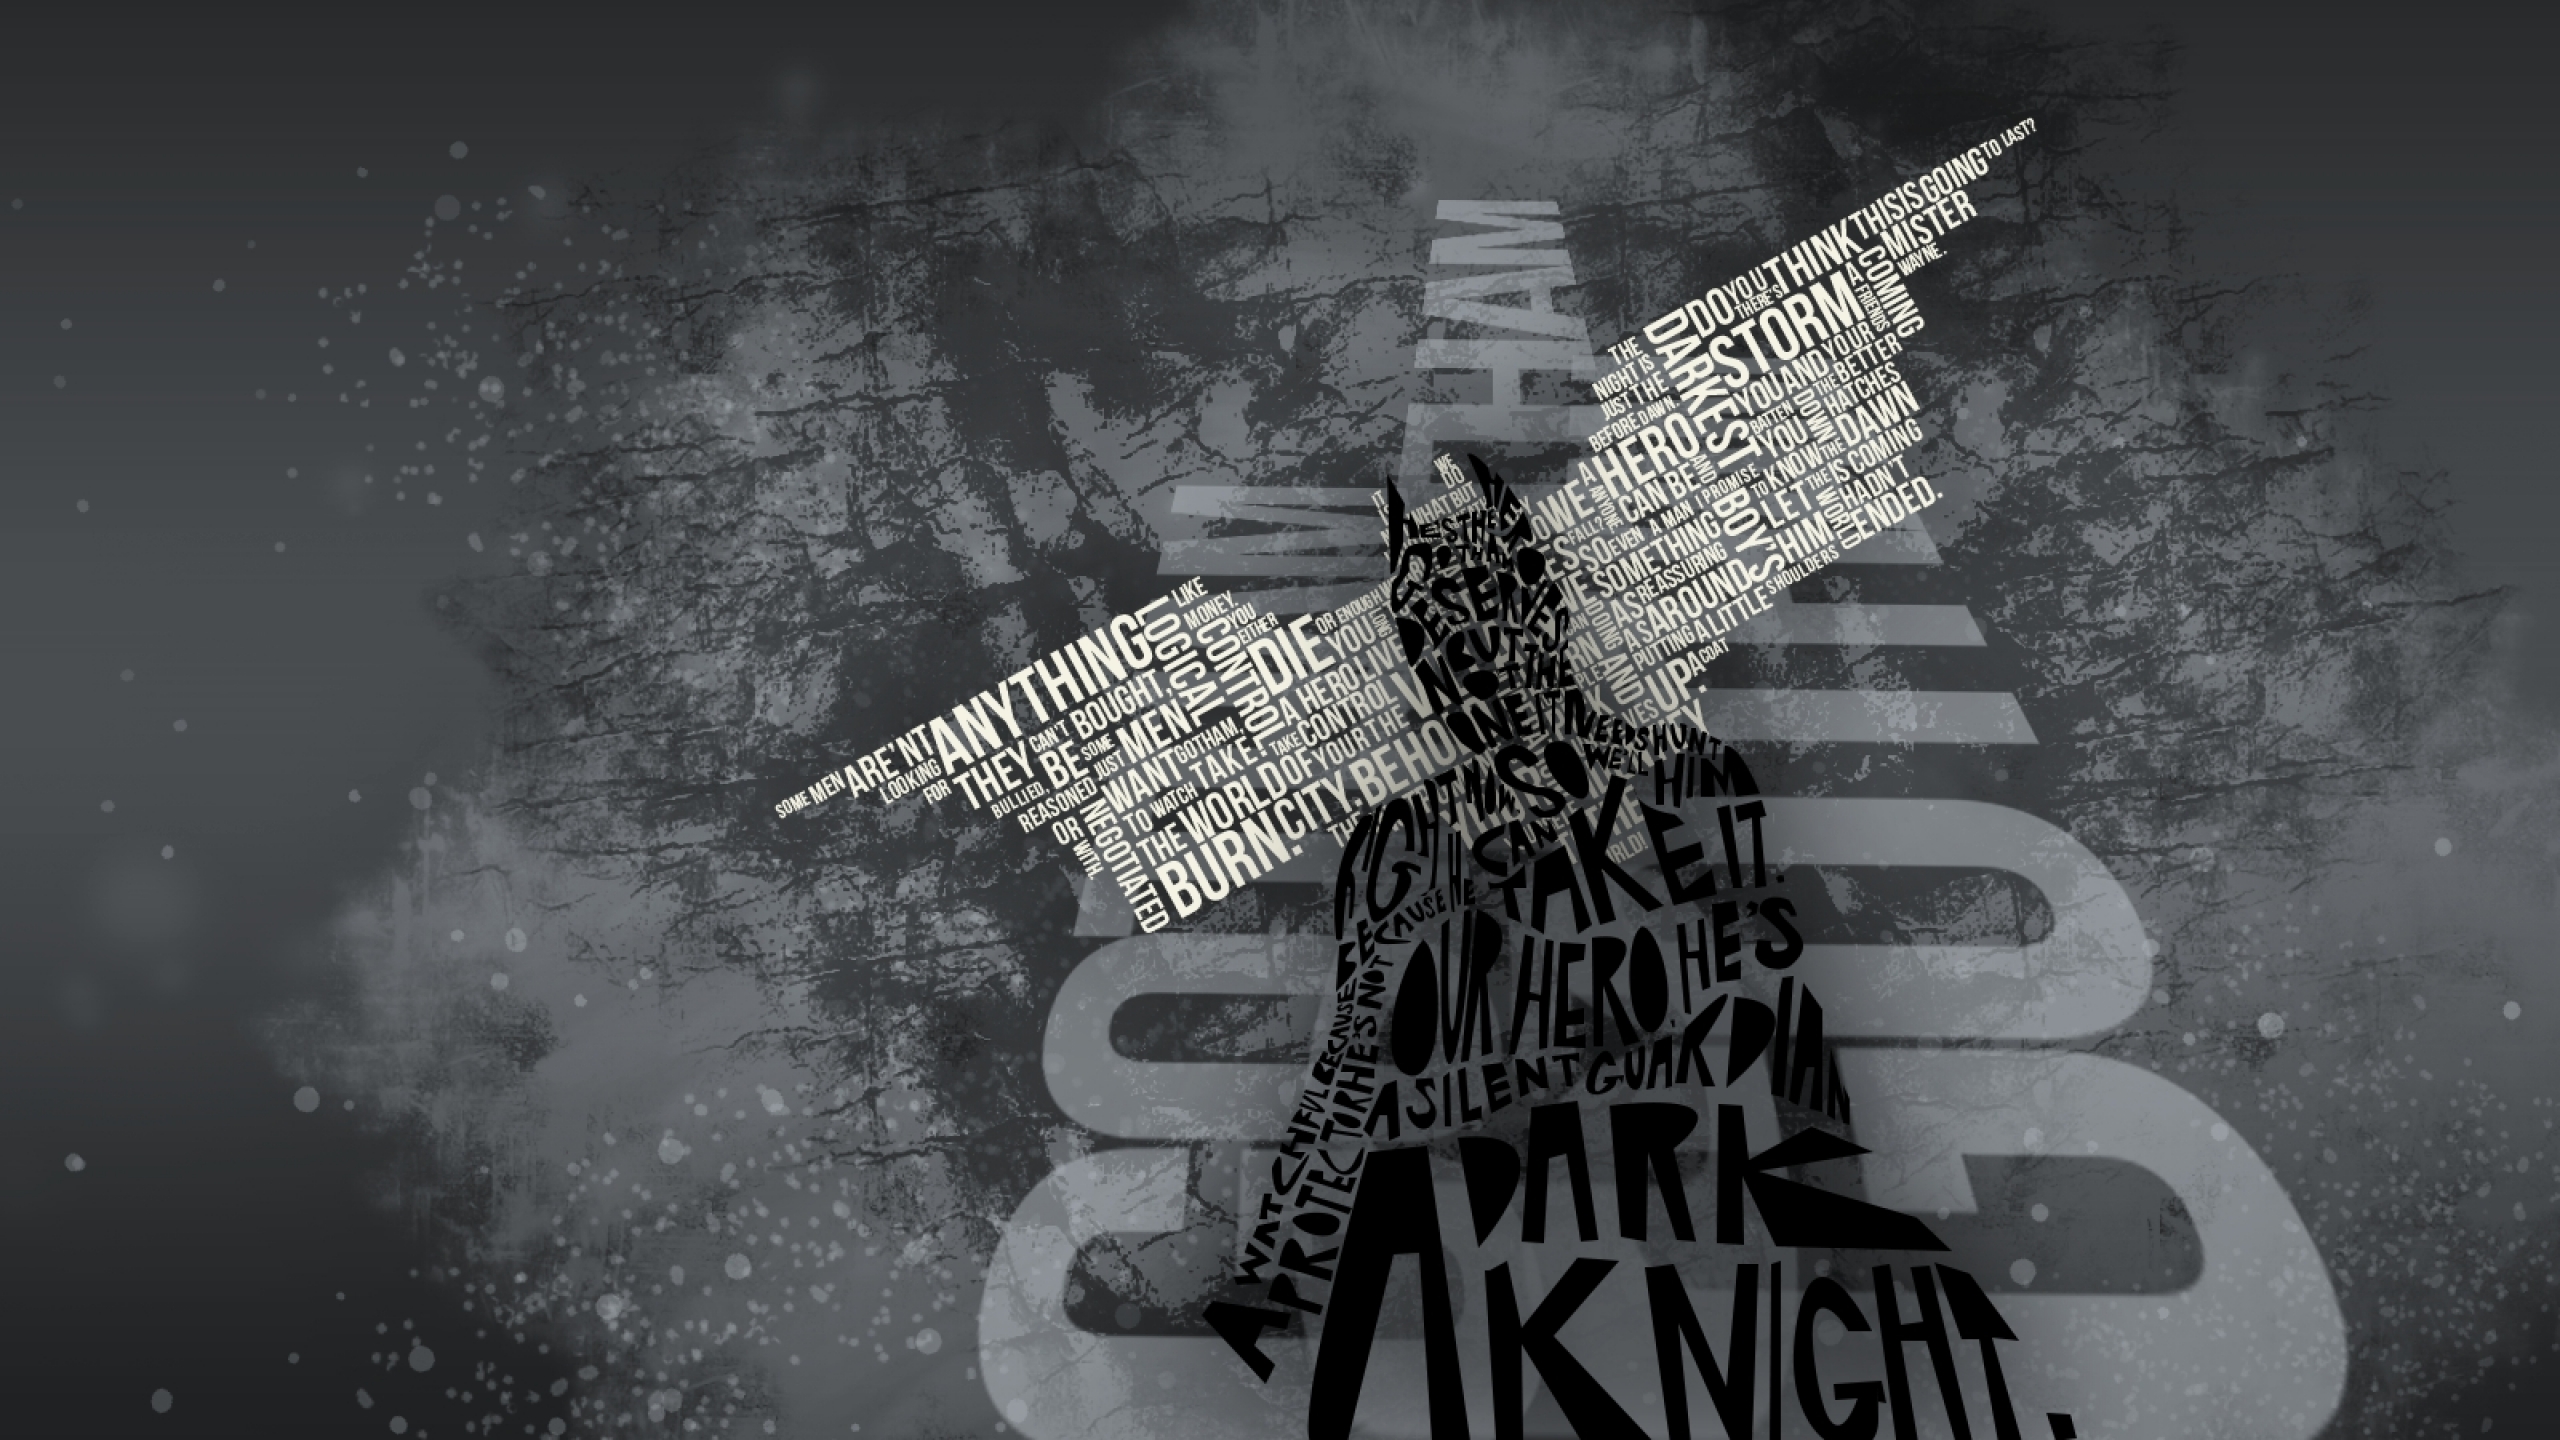 Batman Text Quotes Typograph - Dark Knight Rises Hd Wallpaper Quotes - HD Wallpaper 